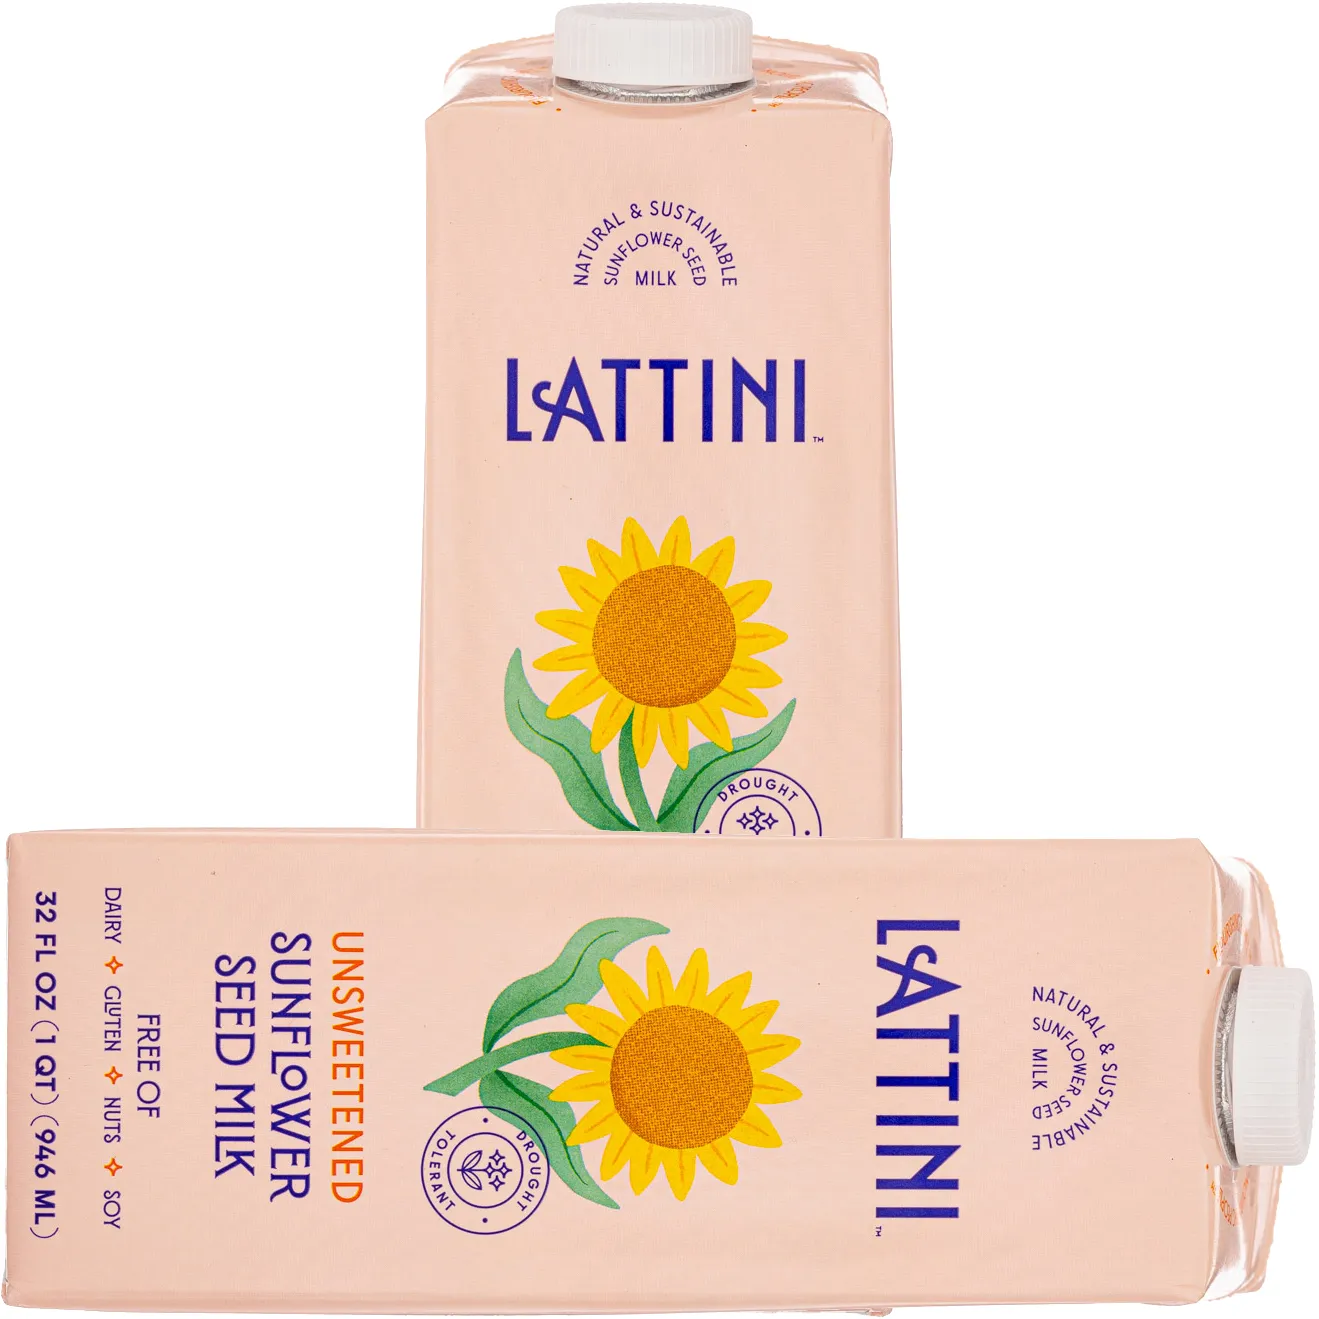 Free Lattini Sunflower Milk (Tryazon Deal)